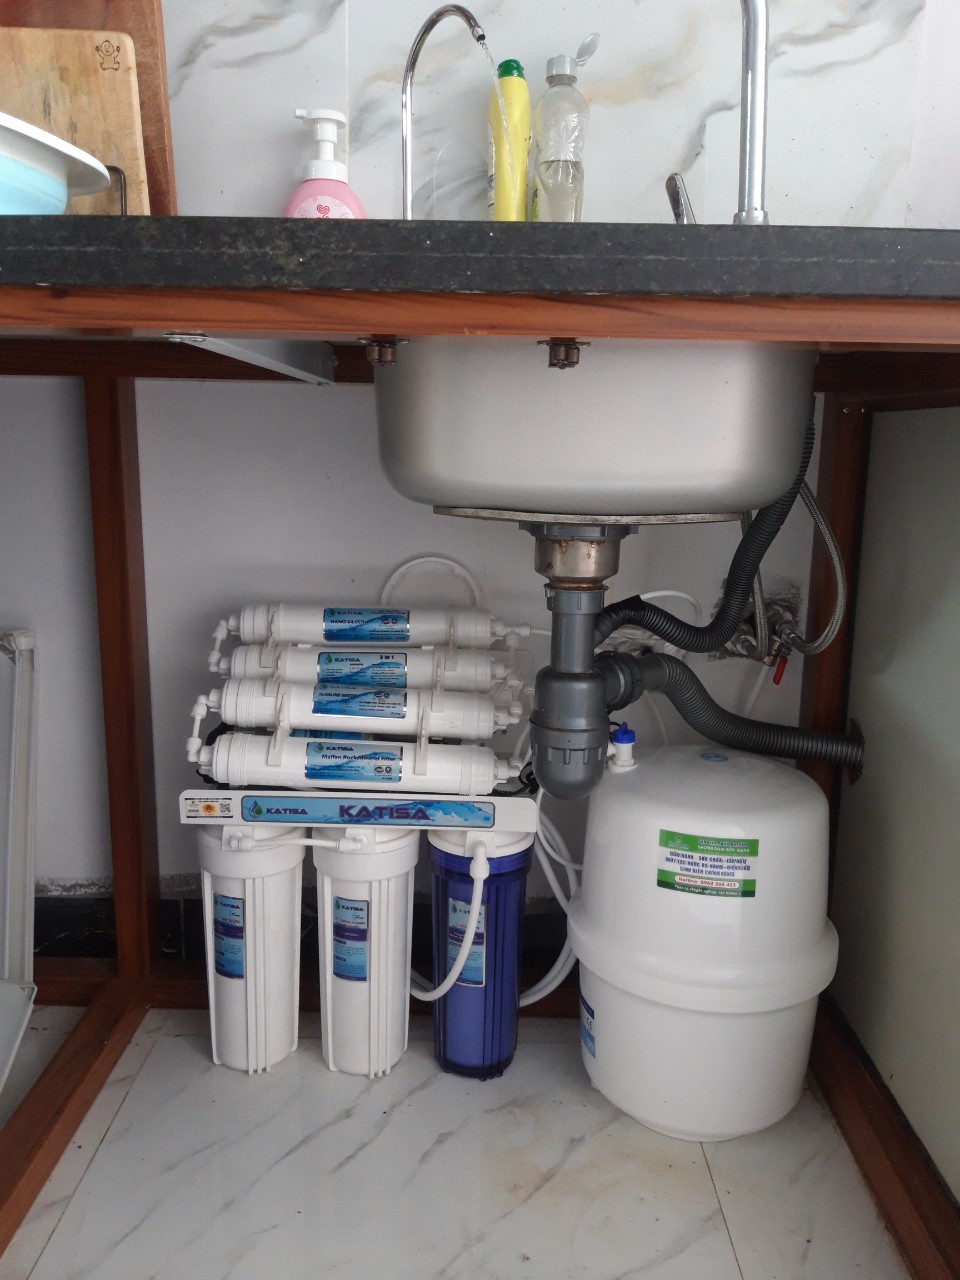 Máy lọc nước lắp trong tủ bếp có những tiện ích gì?